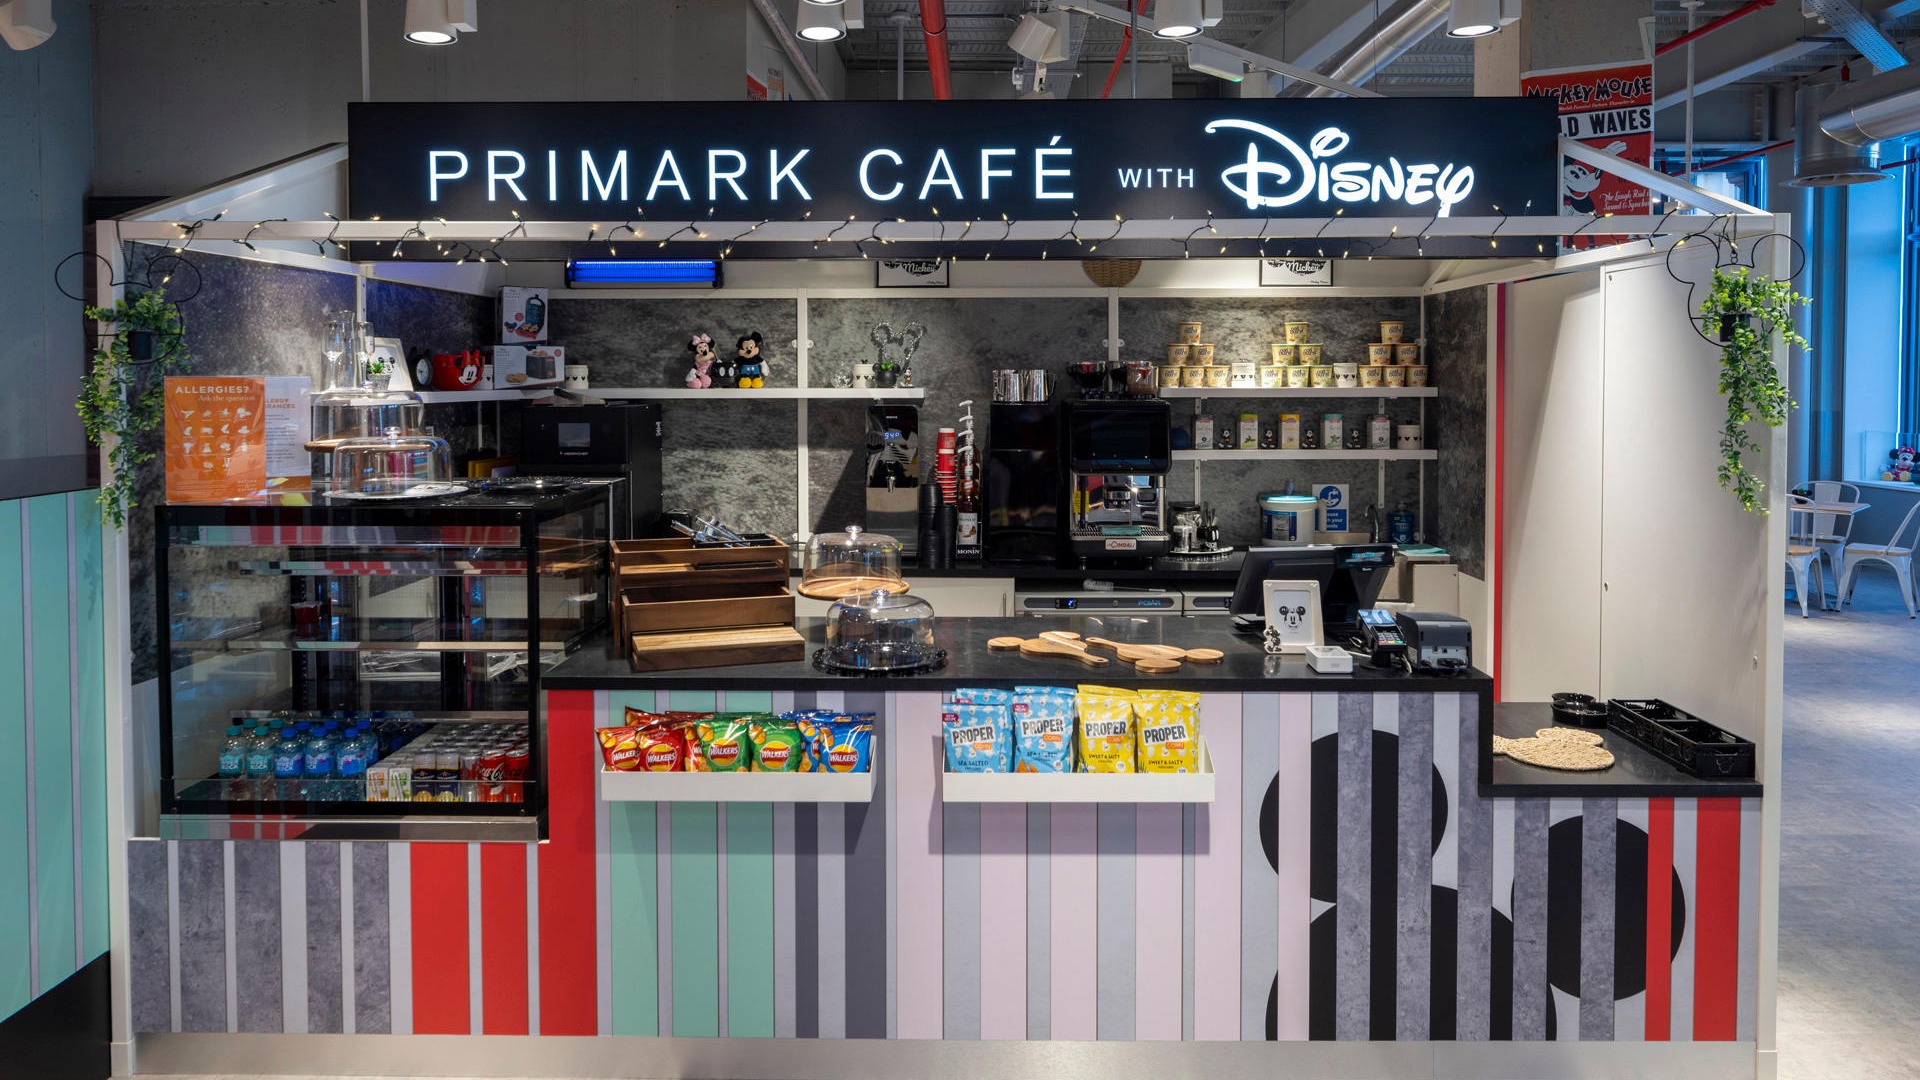 Disney cafe at Primark Belfast